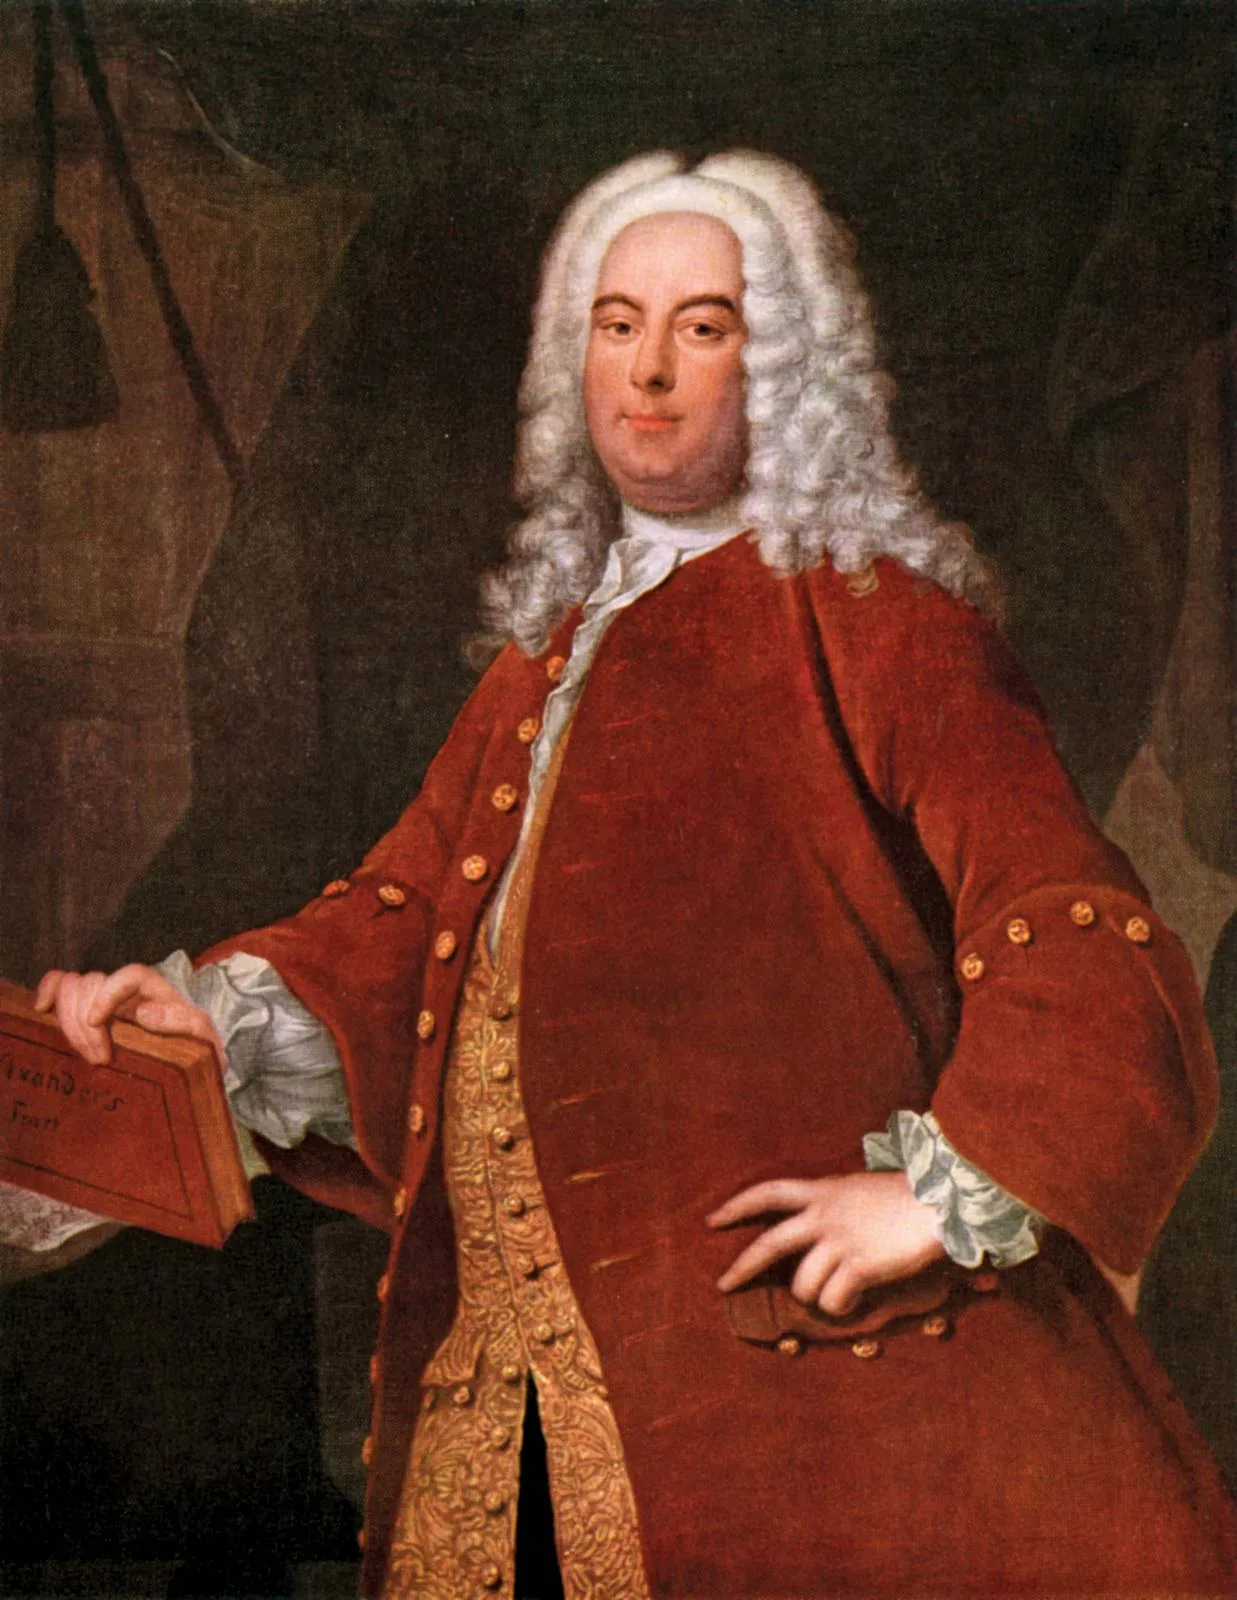 Handel portrait 2